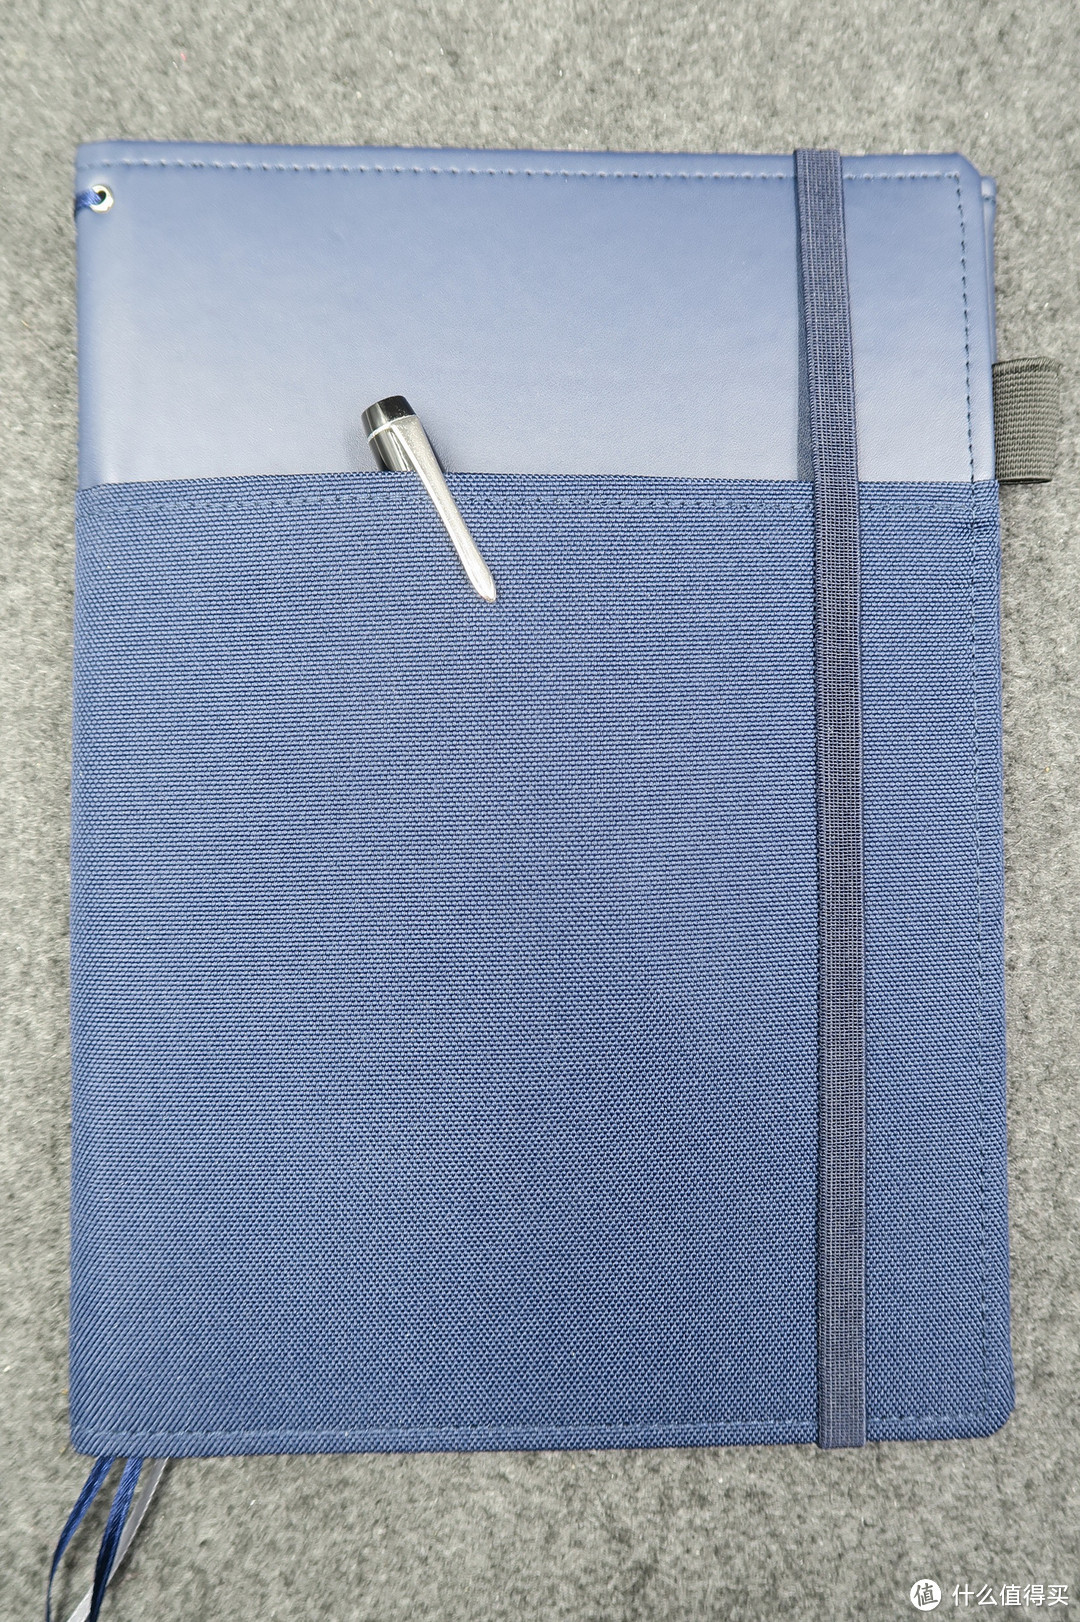 日本KOKUYO 国誉 SYSTEMIC 半皮质笔记本 封册套装 三折版